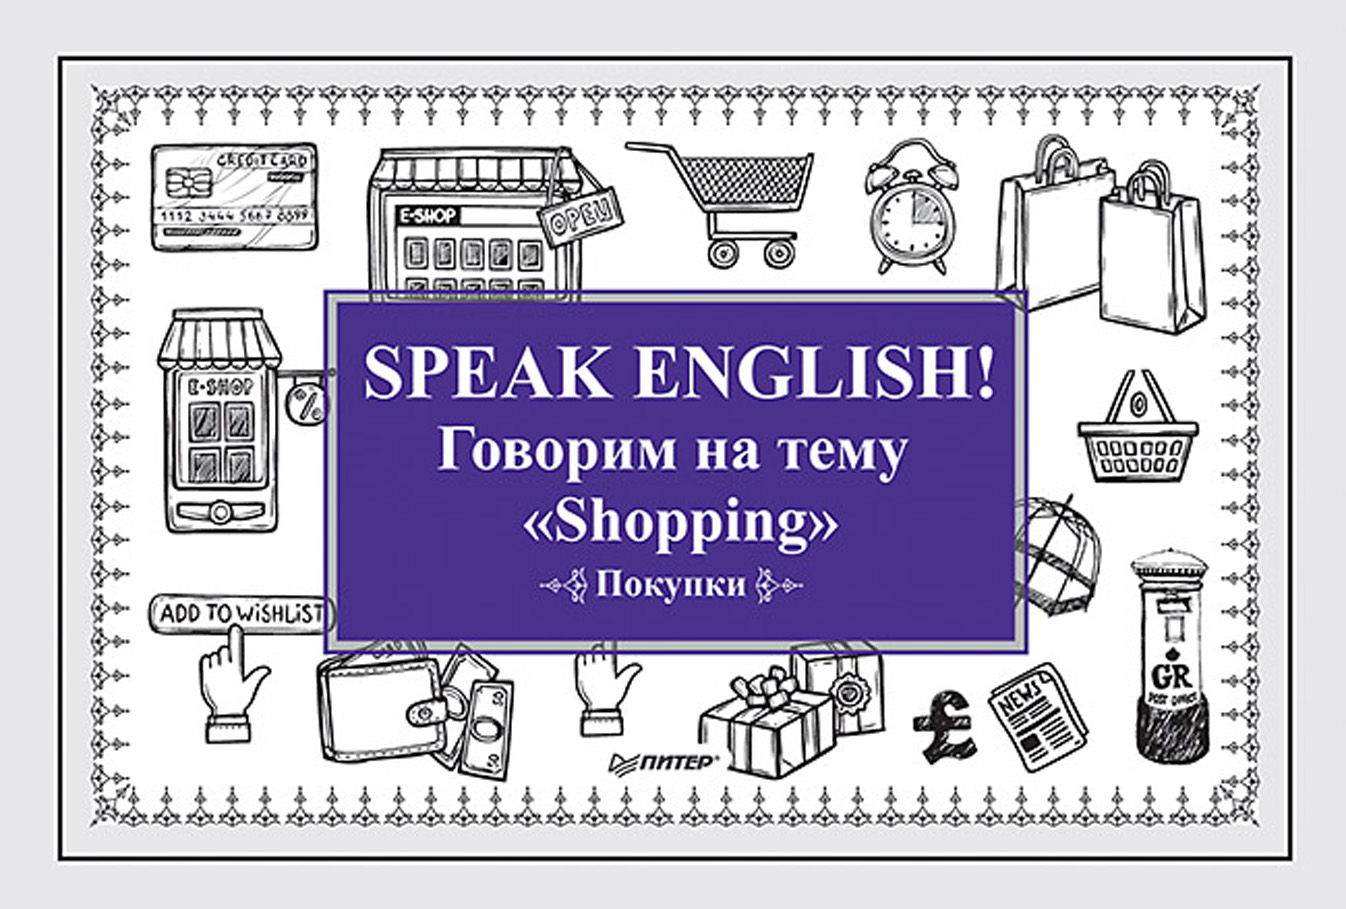 Speak English!Говорим на тему «Shopping» (Покупки)